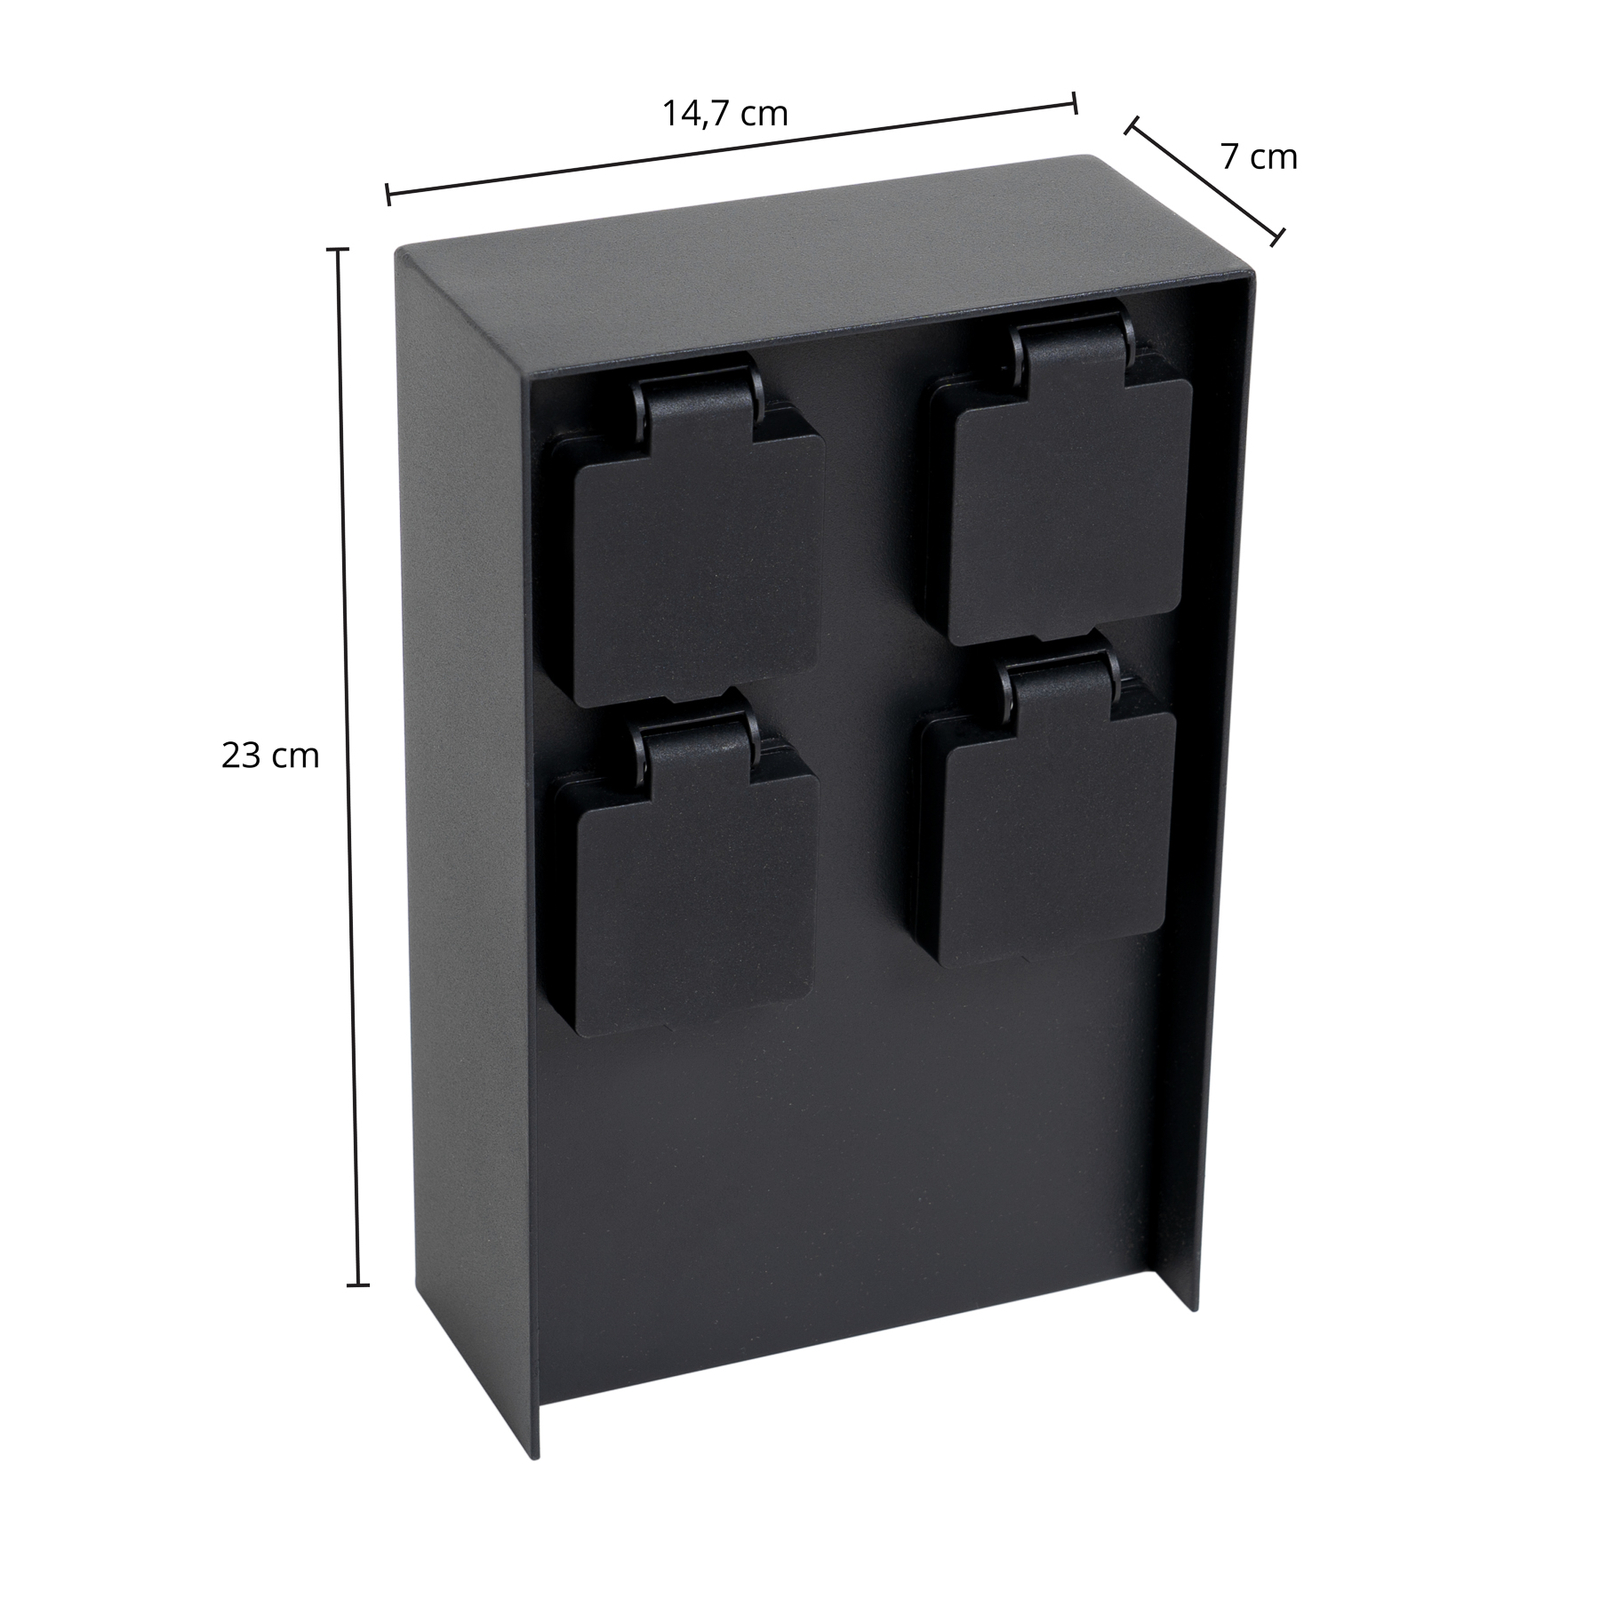 Coluna de energia Prios Foranda, 4 peças, preto, 23 cm